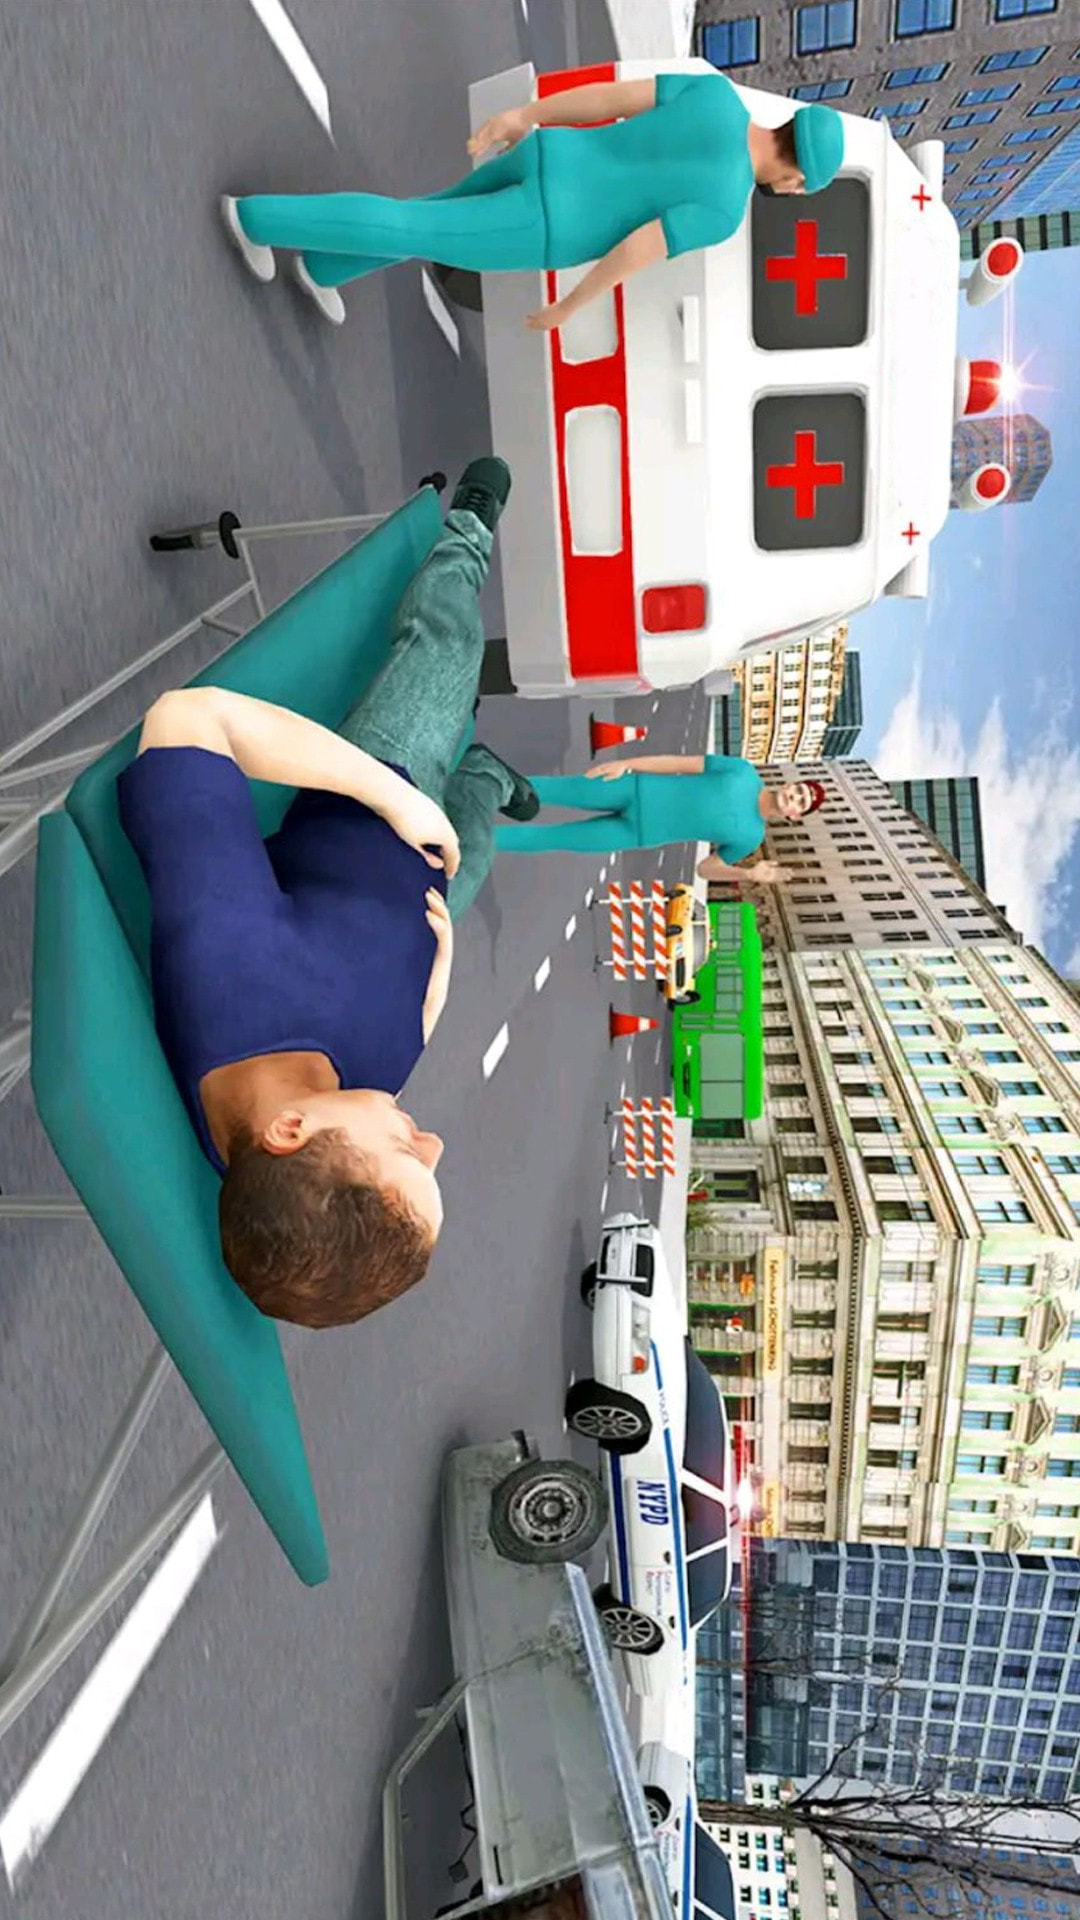 救护车模拟3D游戏